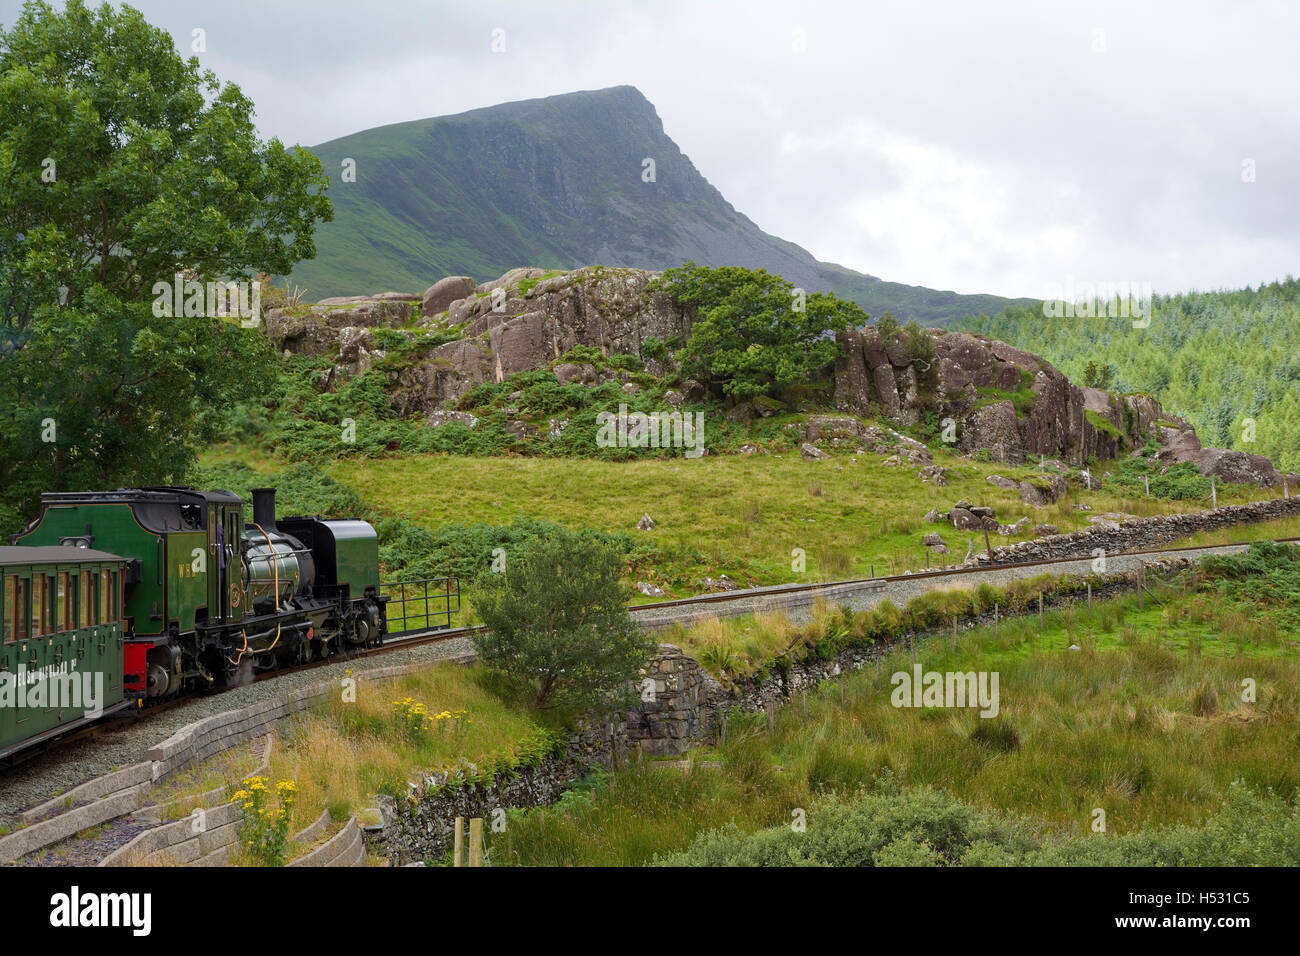 Ex-SAR Garratt locomotive on the Welsh Highland Railway, Llyn Peninsula, Gwynedd, North Wales UK Stock Photo